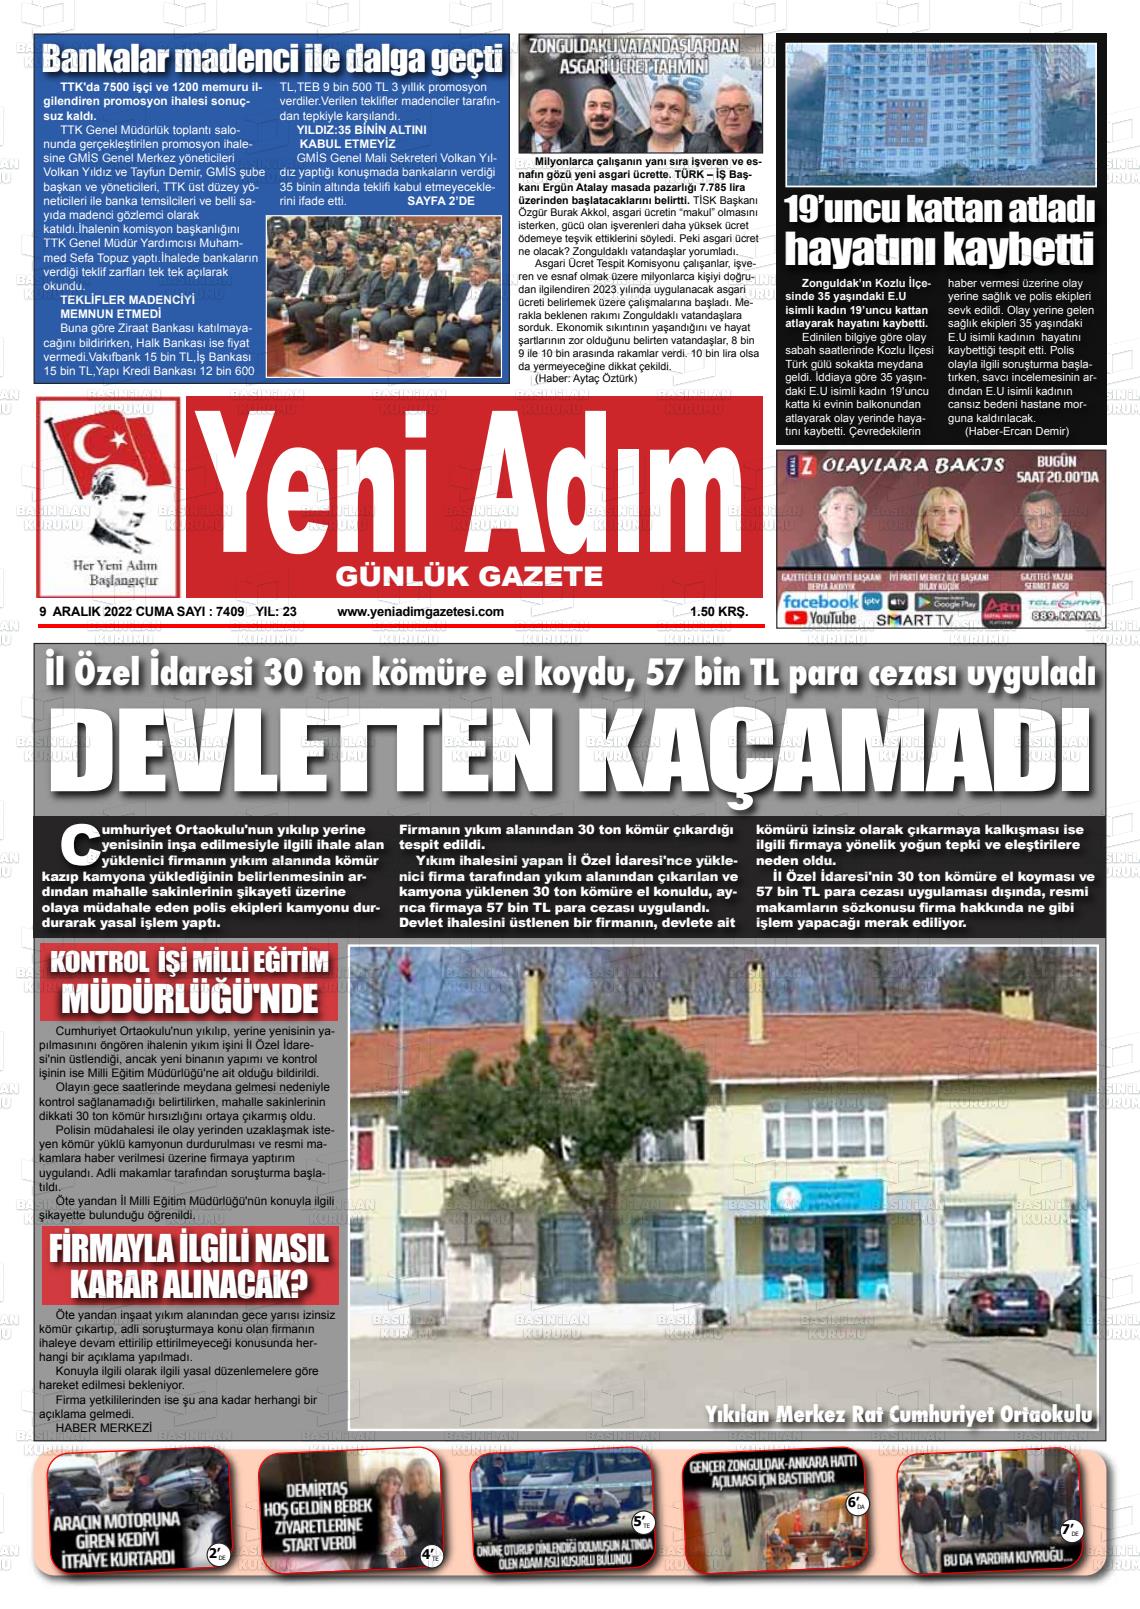 09 Aralık 2022 Yeni Adım Gazete Manşeti